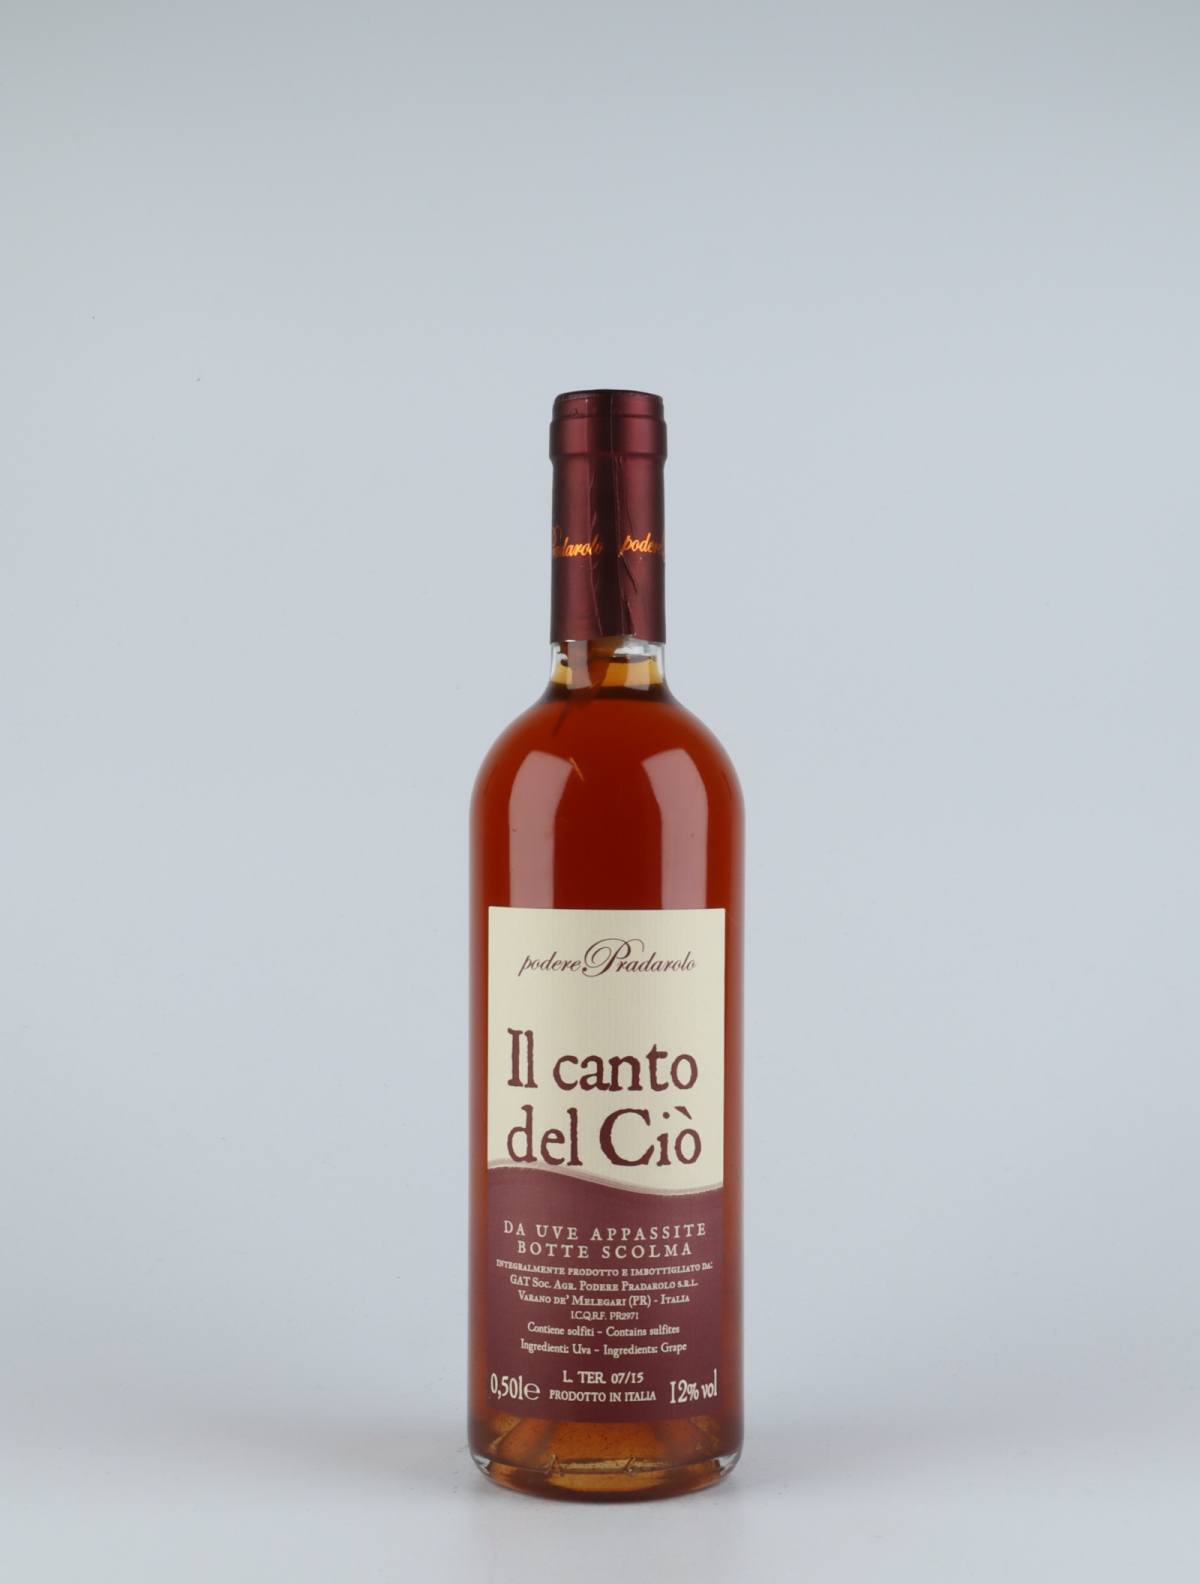 A bottle N.V. Il Canto del Cio' Solera 2007-2015 Sweet wine from Podere Pradarolo, Emilia-Romagna in Italy